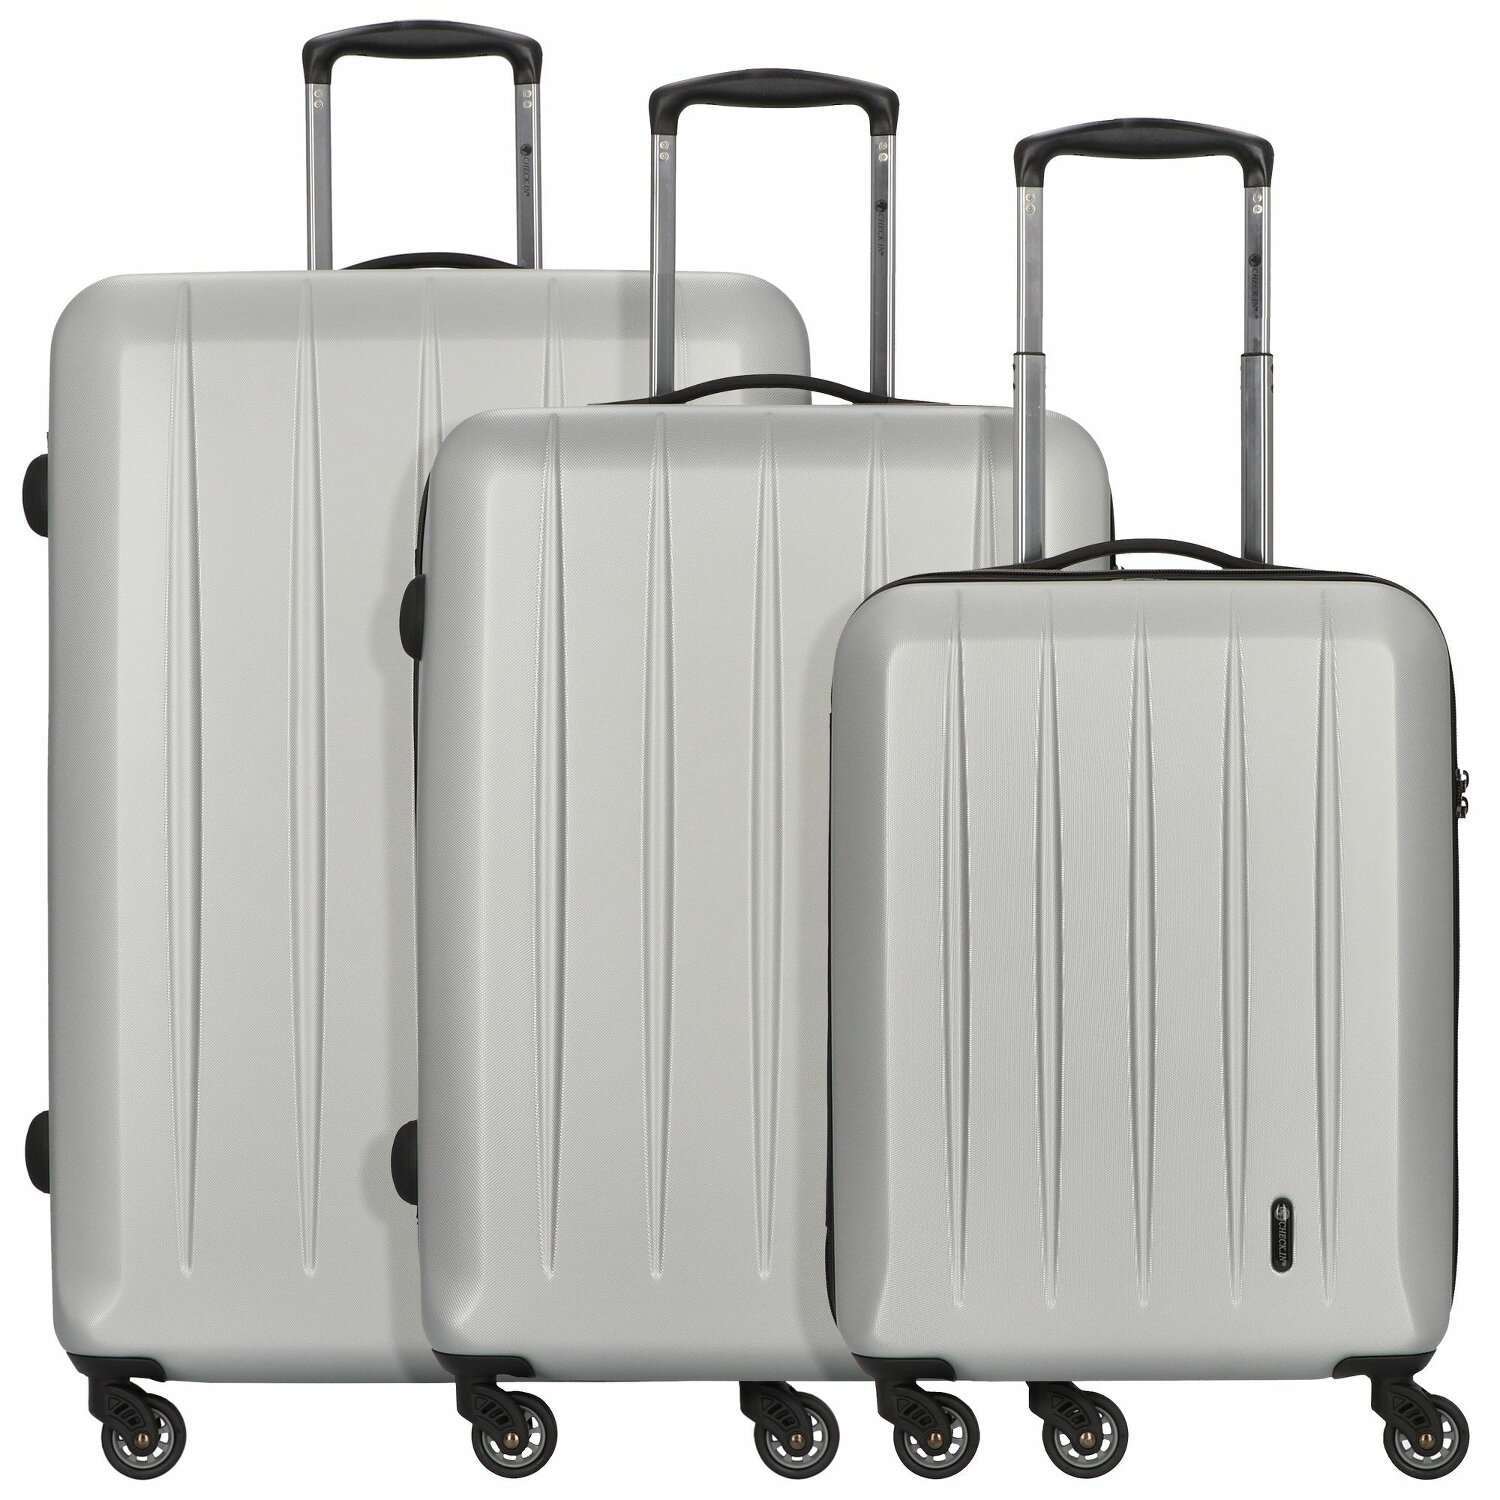 Set de 4 valises rigides noir avec serrure S / M / L / XL